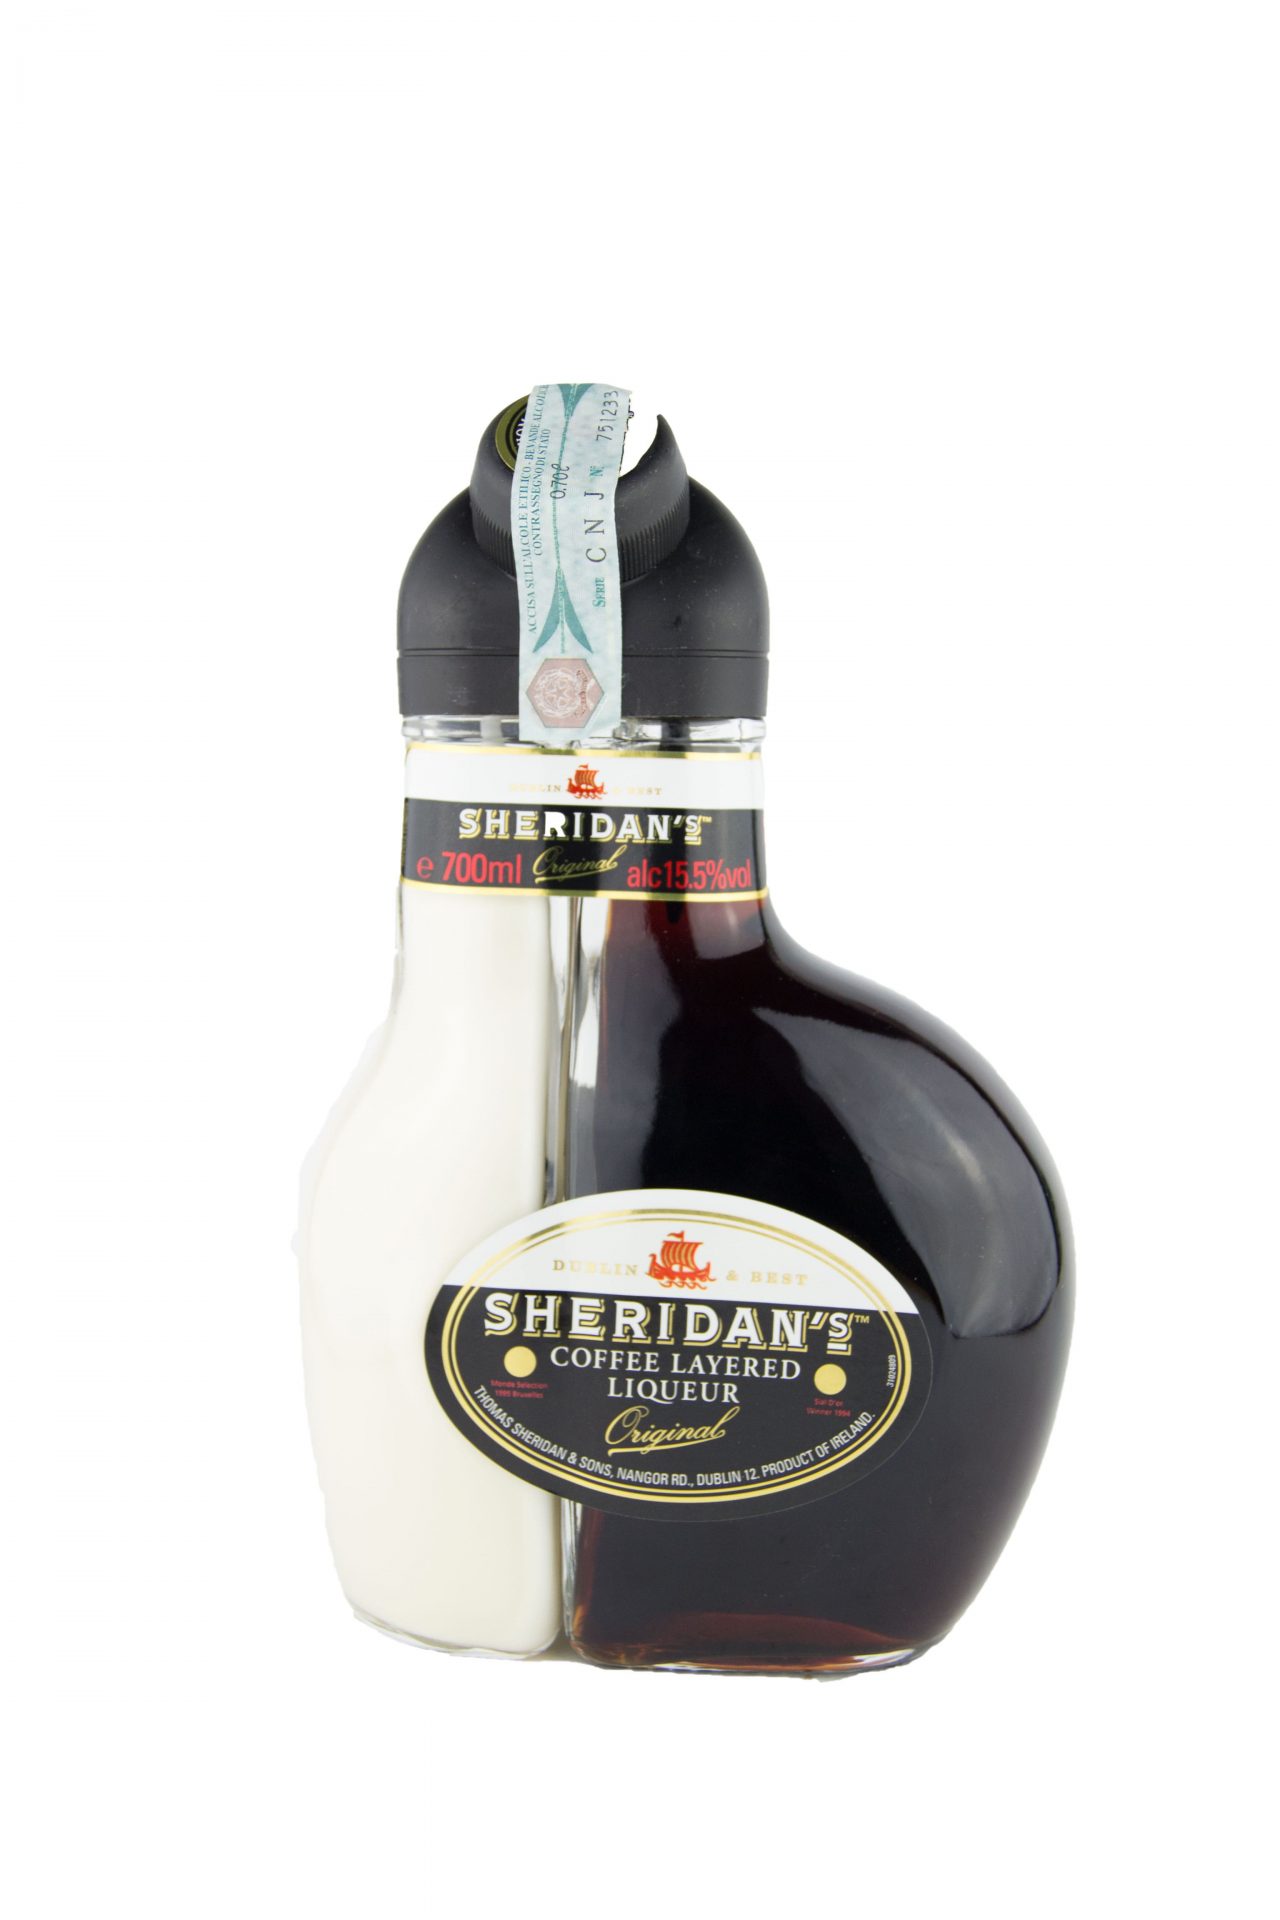 Sheridan’s – Coffee Layered Liqueur